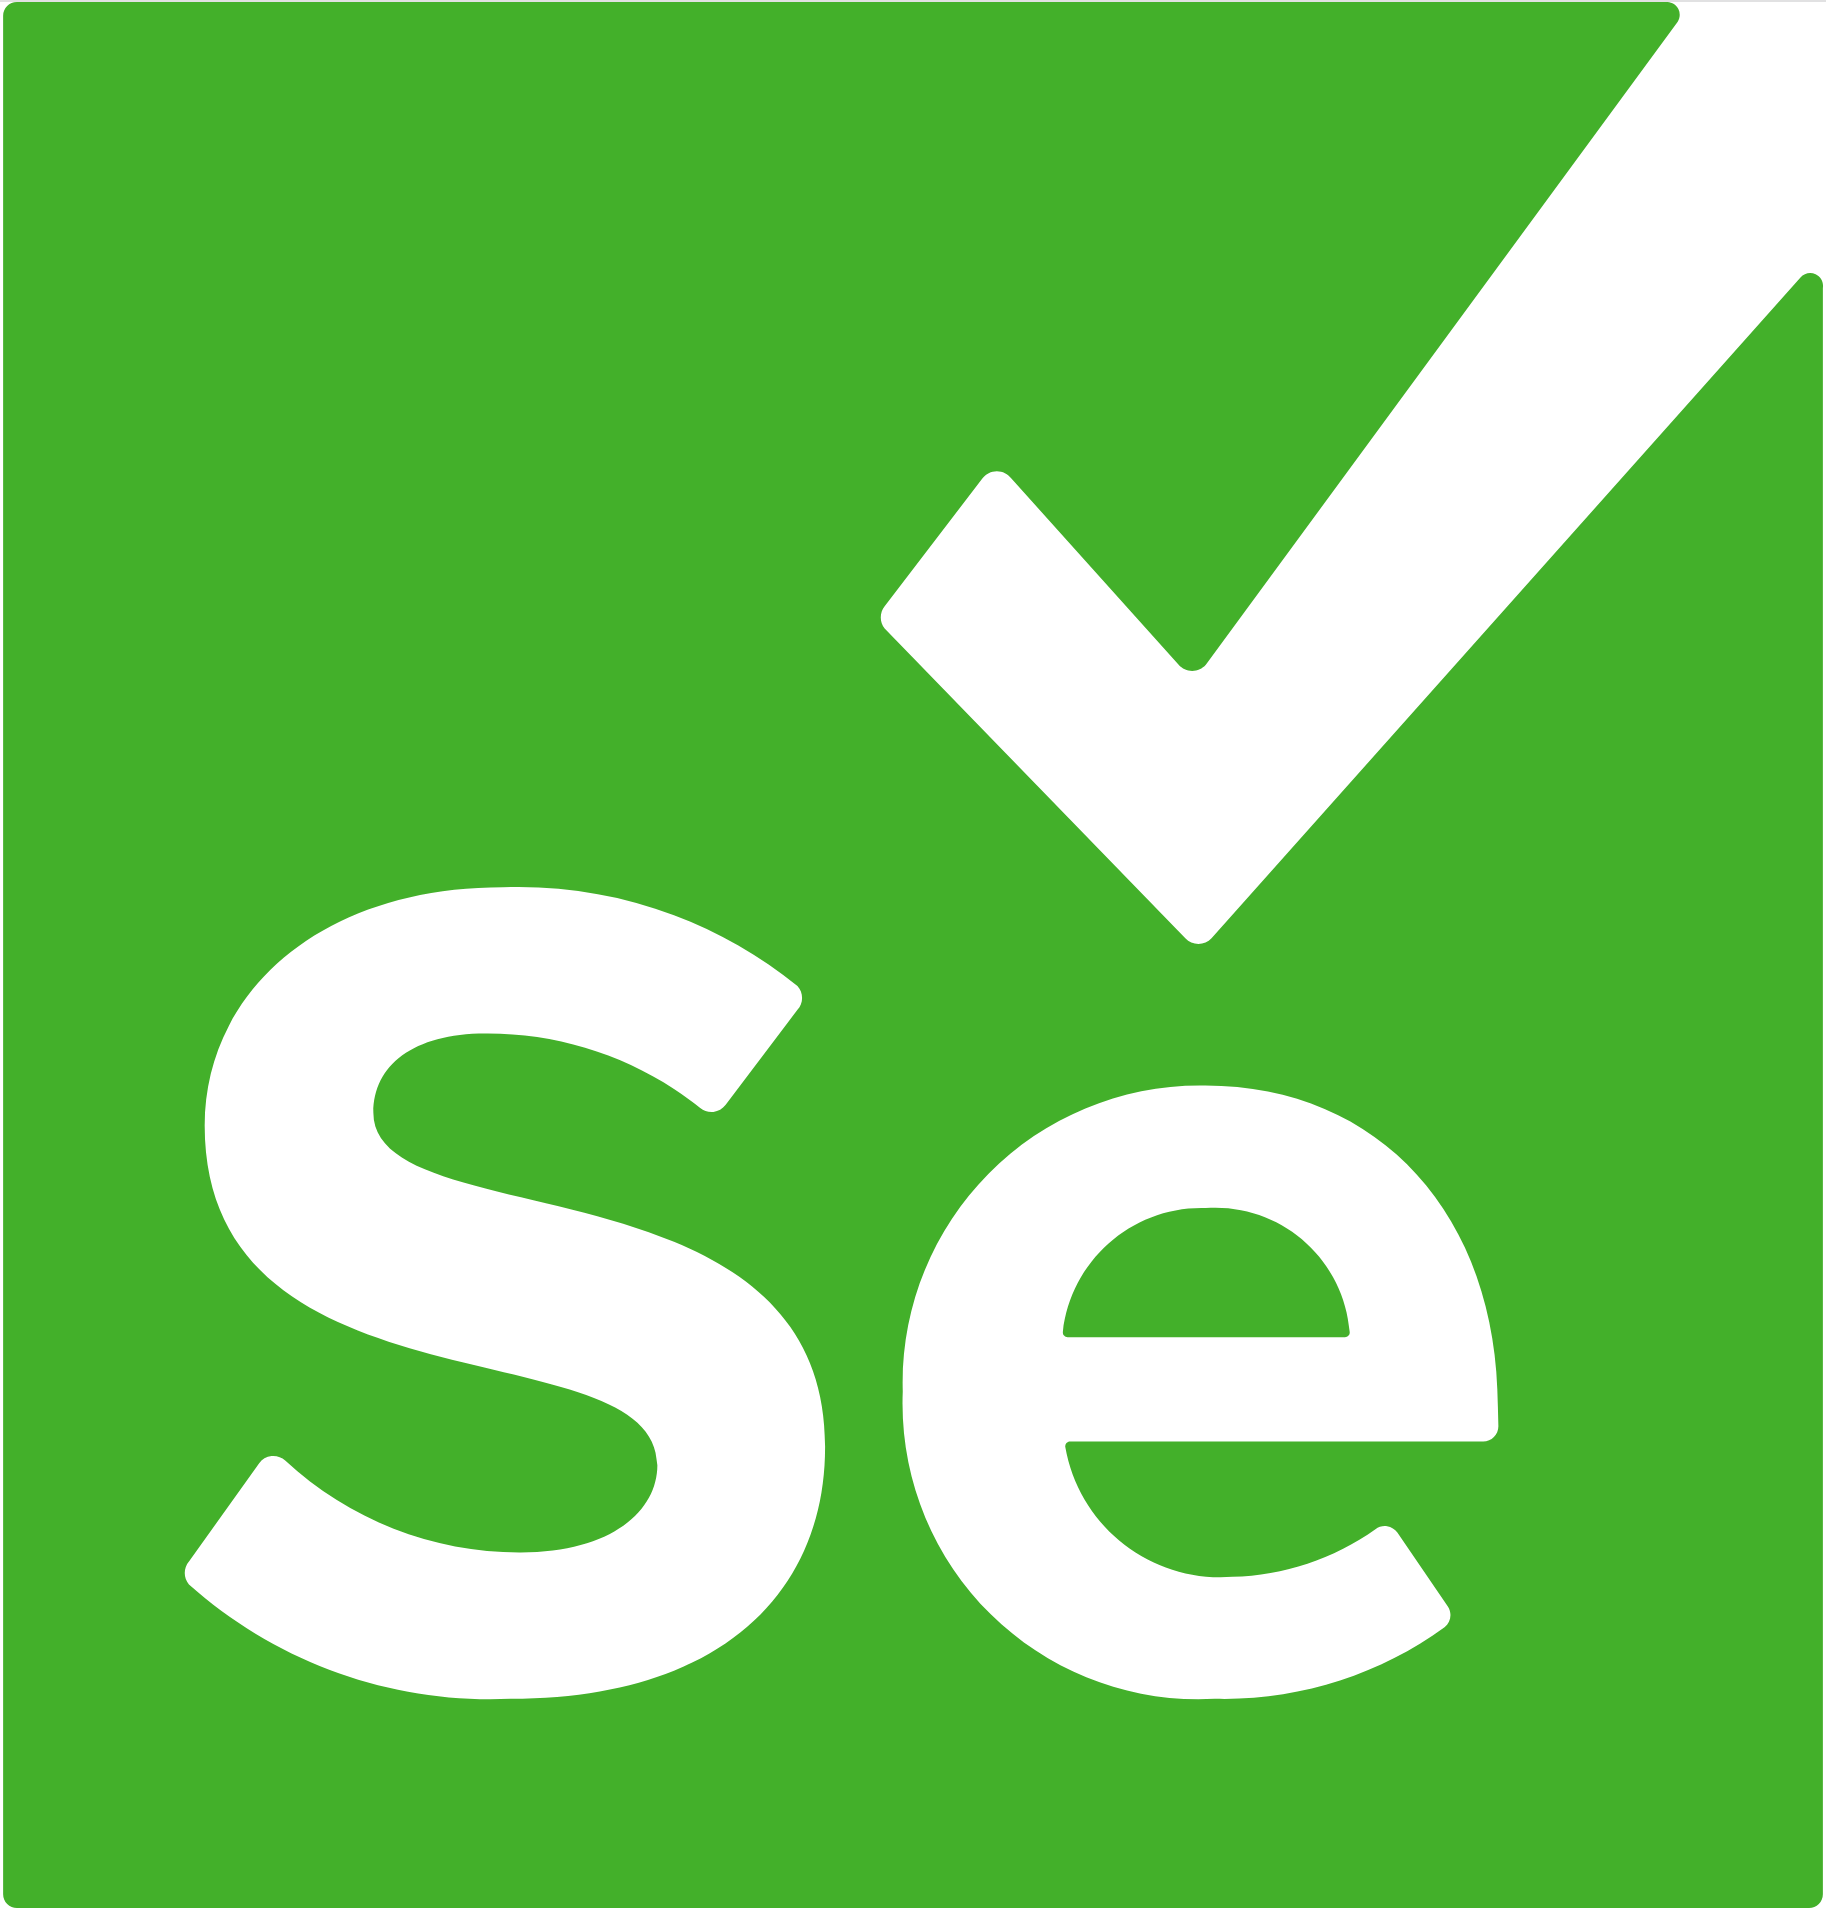 logo_selenium.png